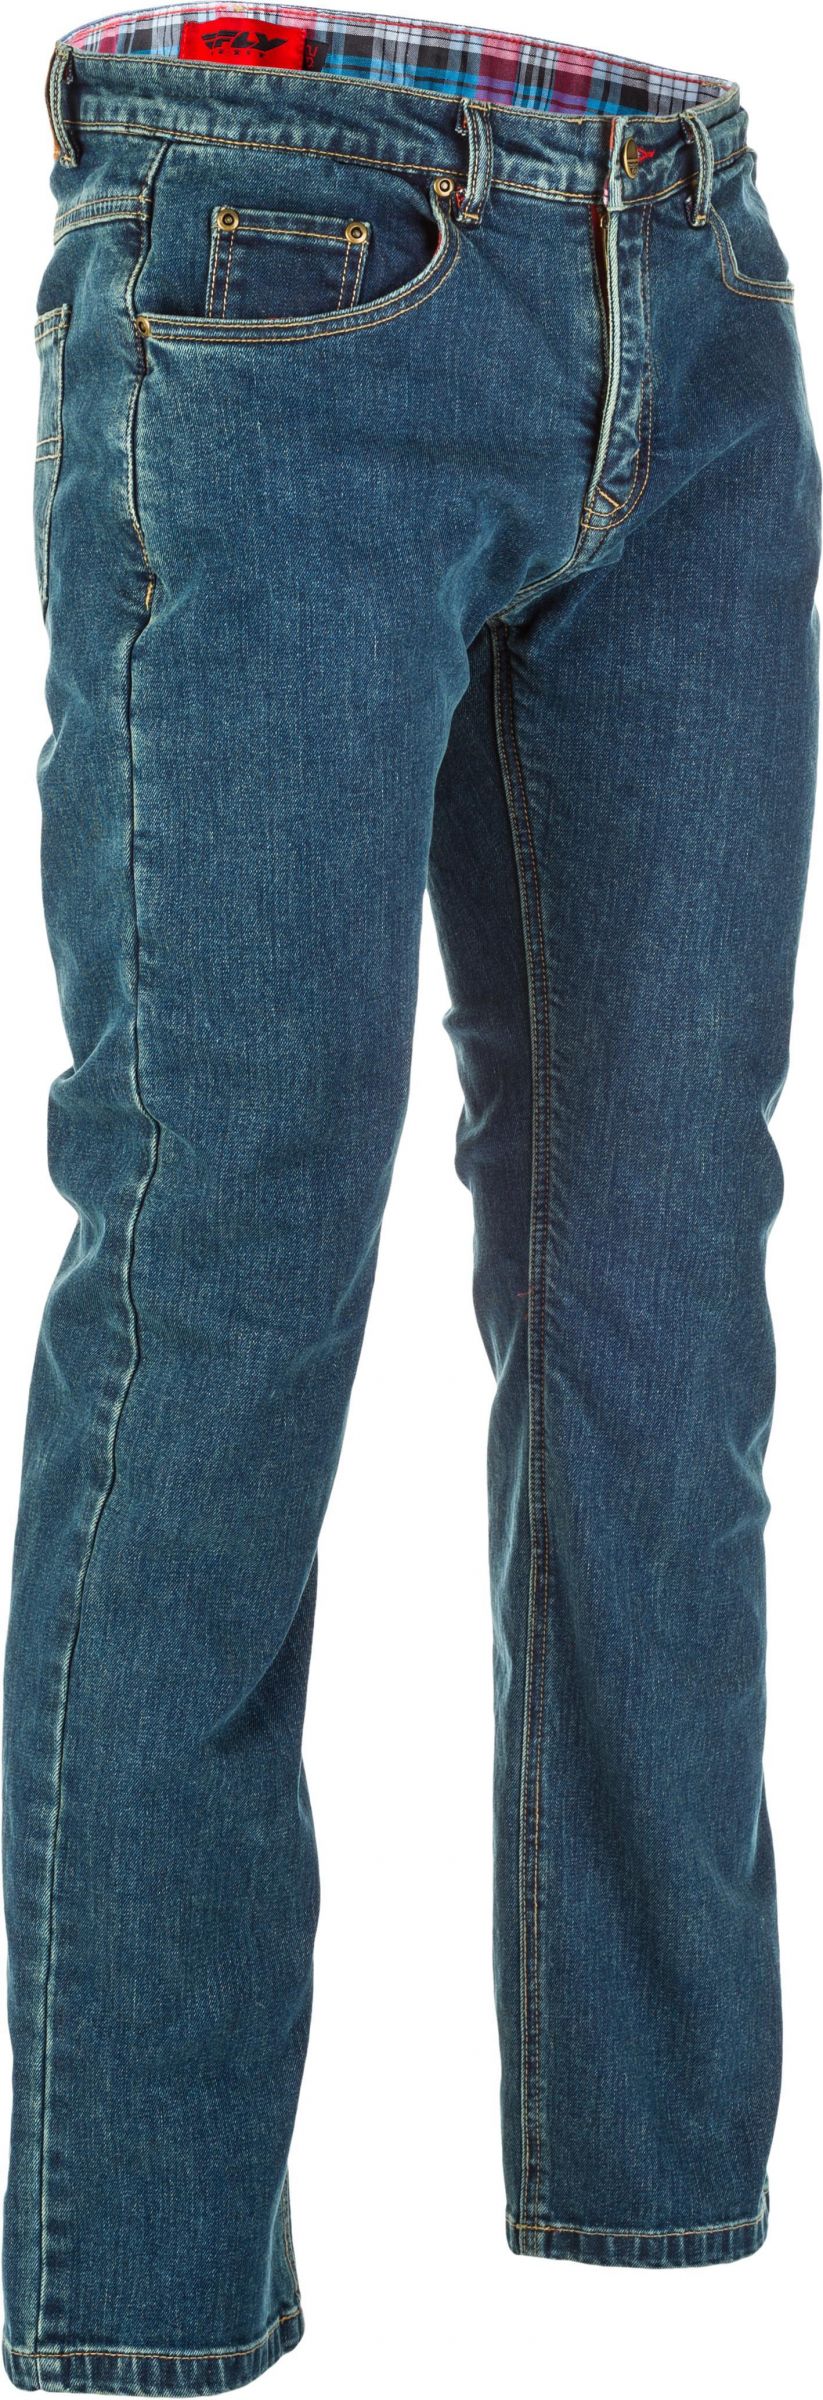 8RQV-FL-6049-478-30438TALL Resistance Jeans